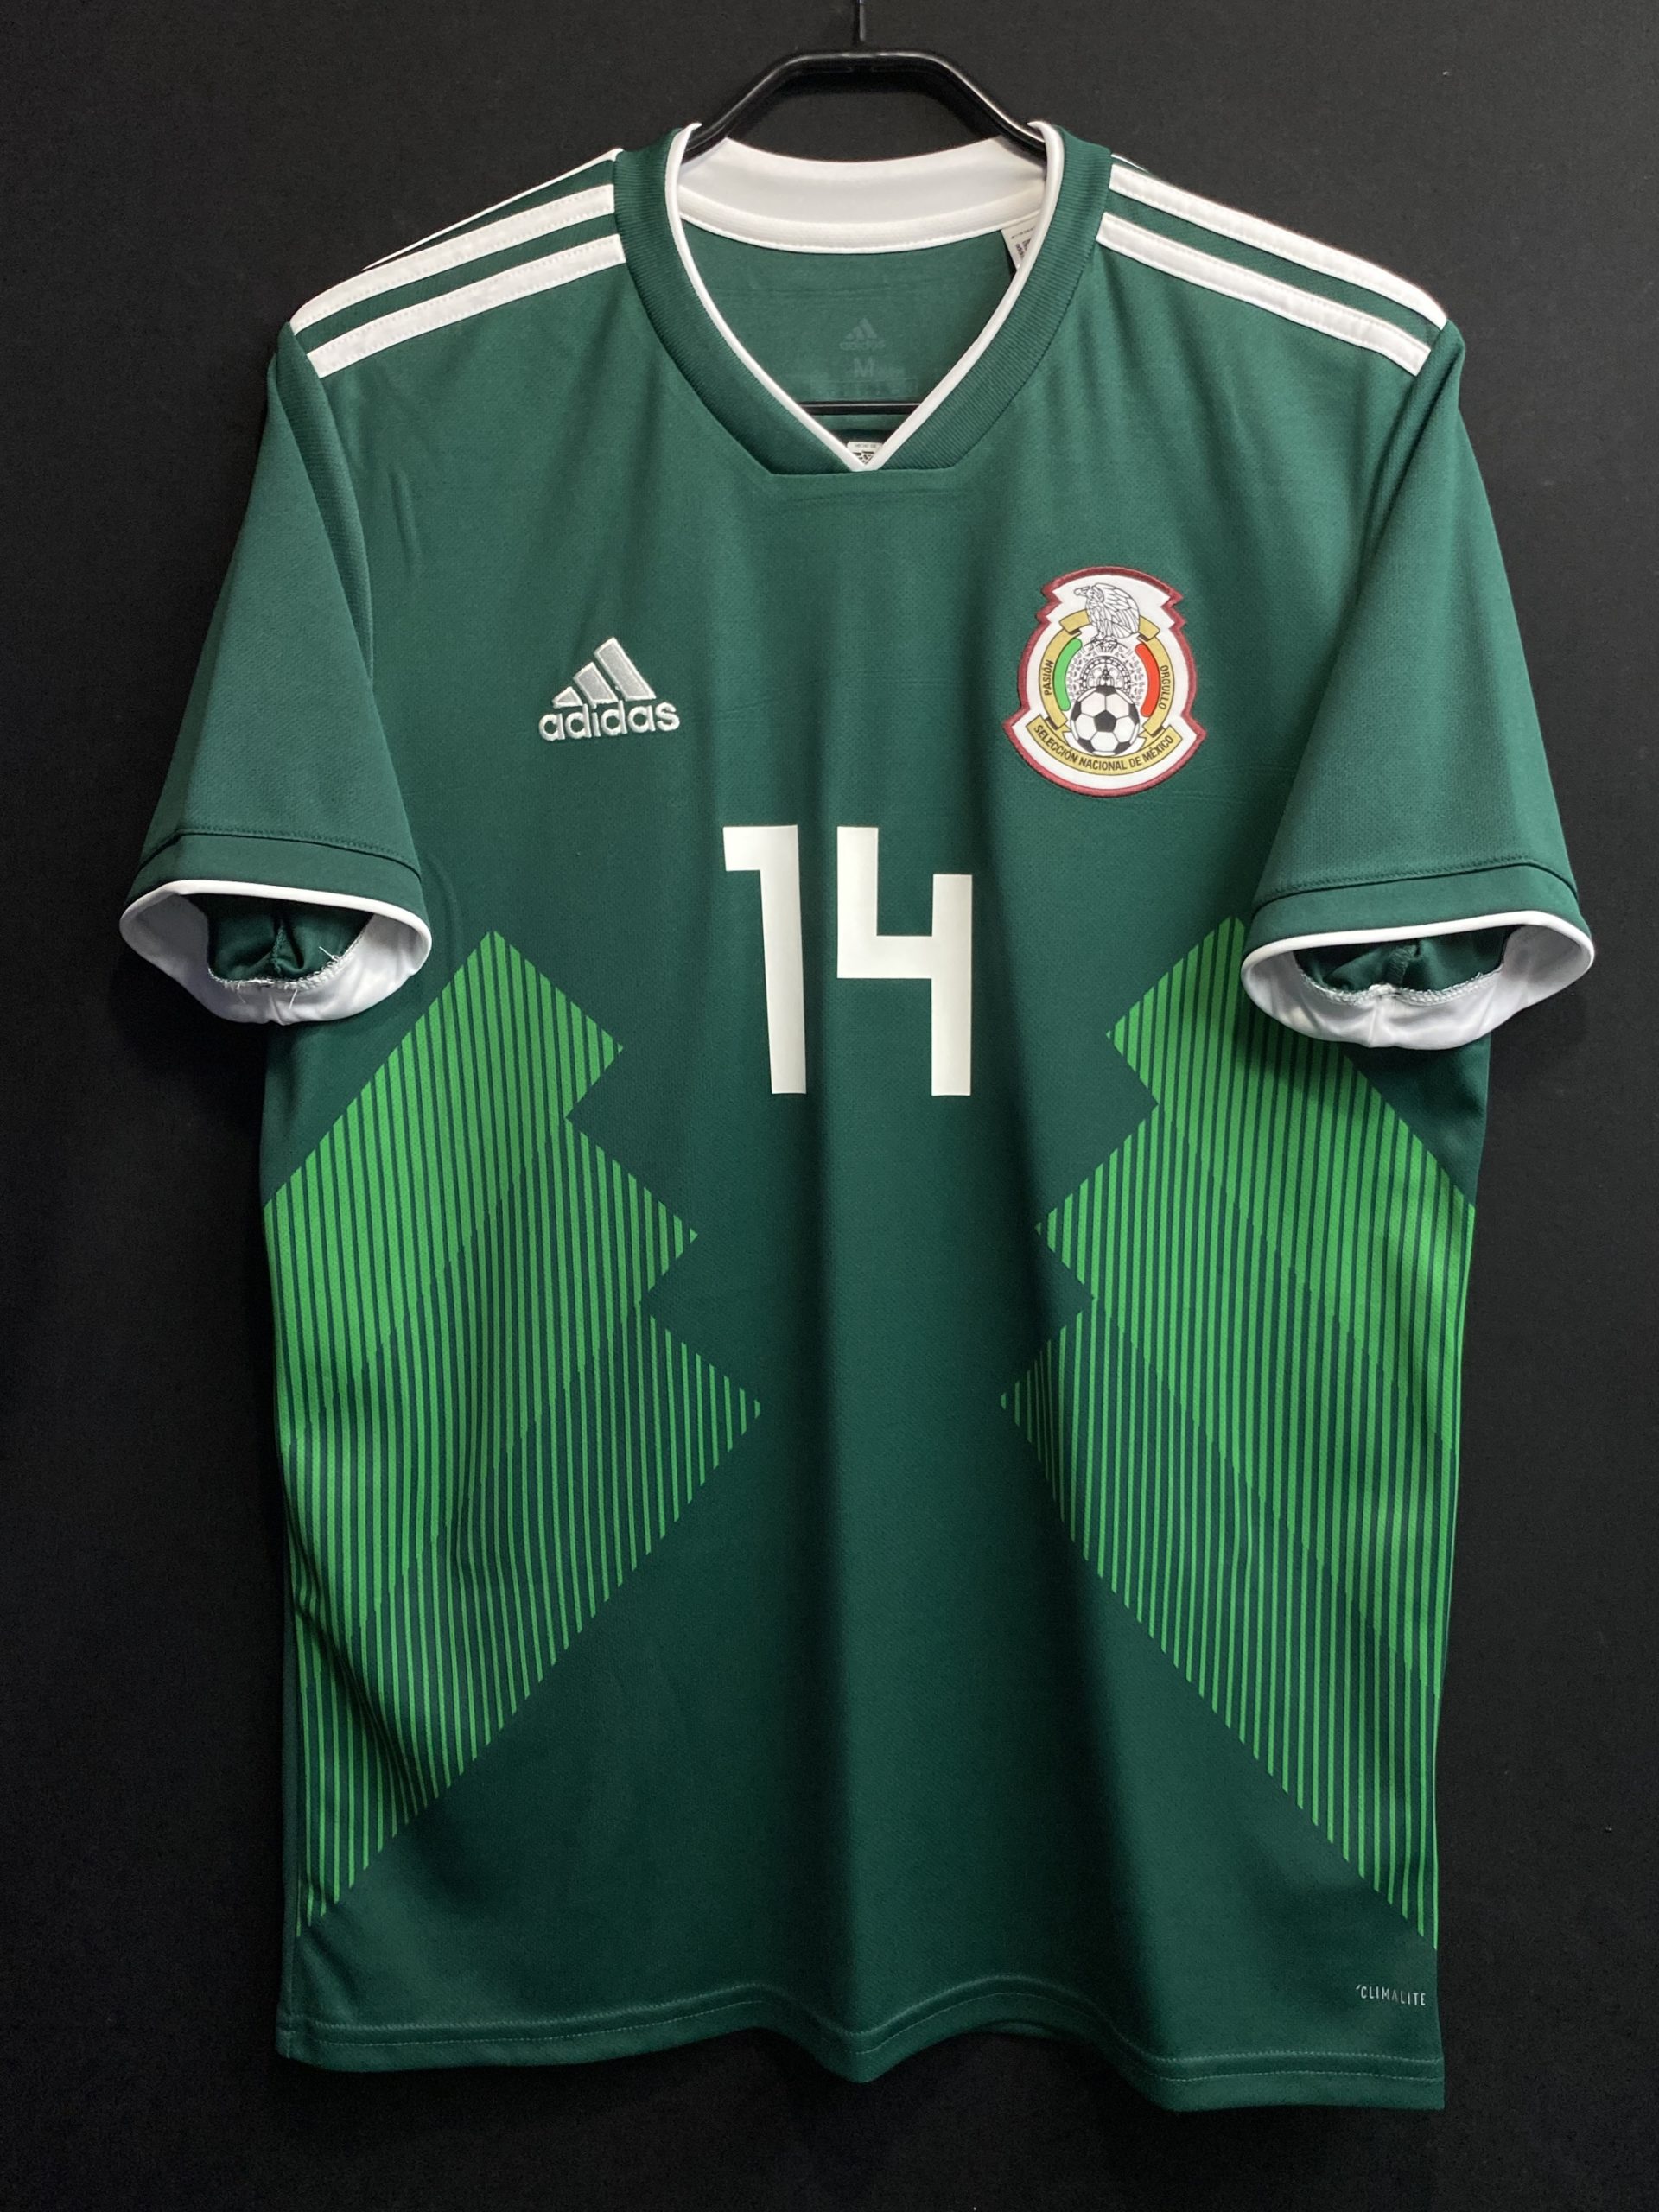 1998メキシコ代表 FIFAWORLD CUP アメリカ大会 ユニフォーム www